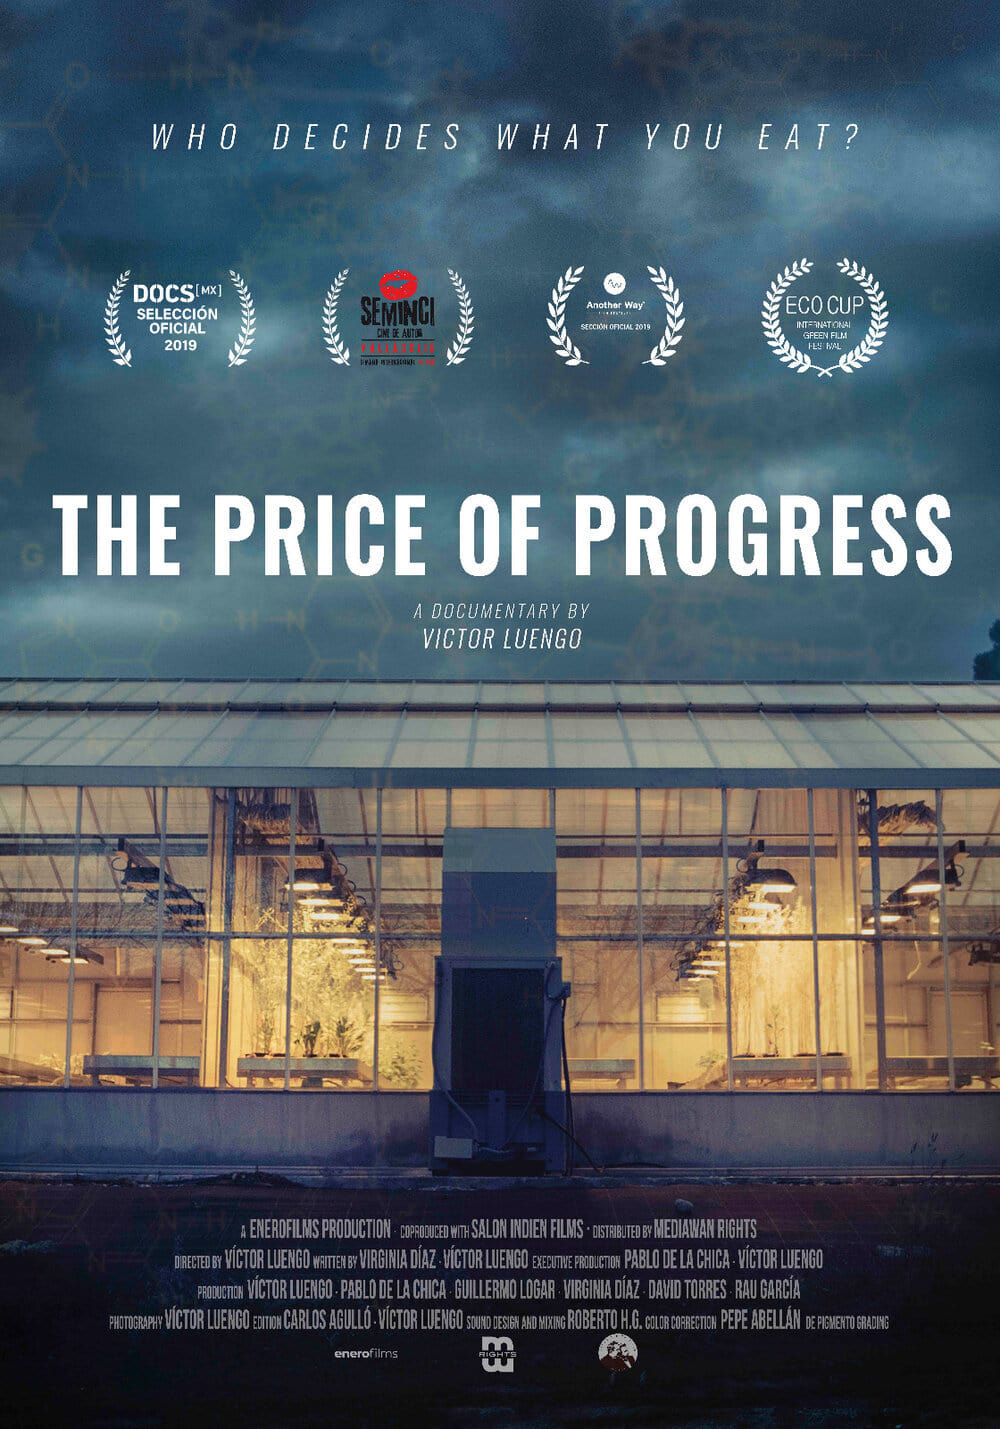 The Price of Progress